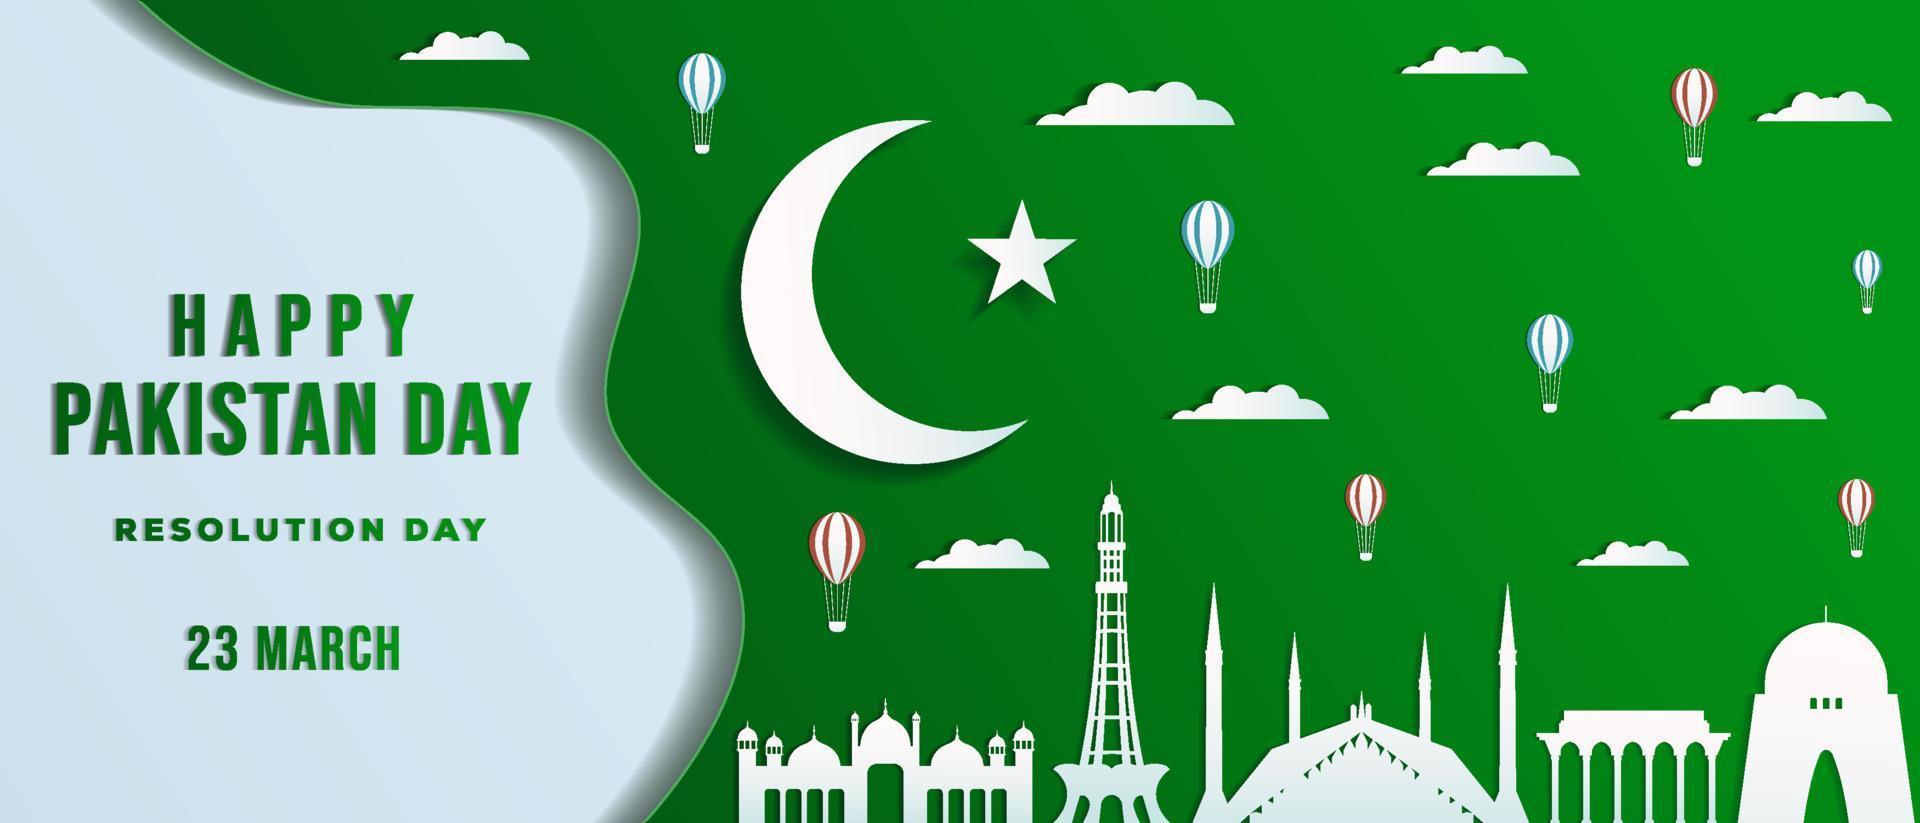 Pakistan dag in papier kunst stijl horizontaal banier met Pakistan mijlpaal, wolk, en heet lucht ballon vector